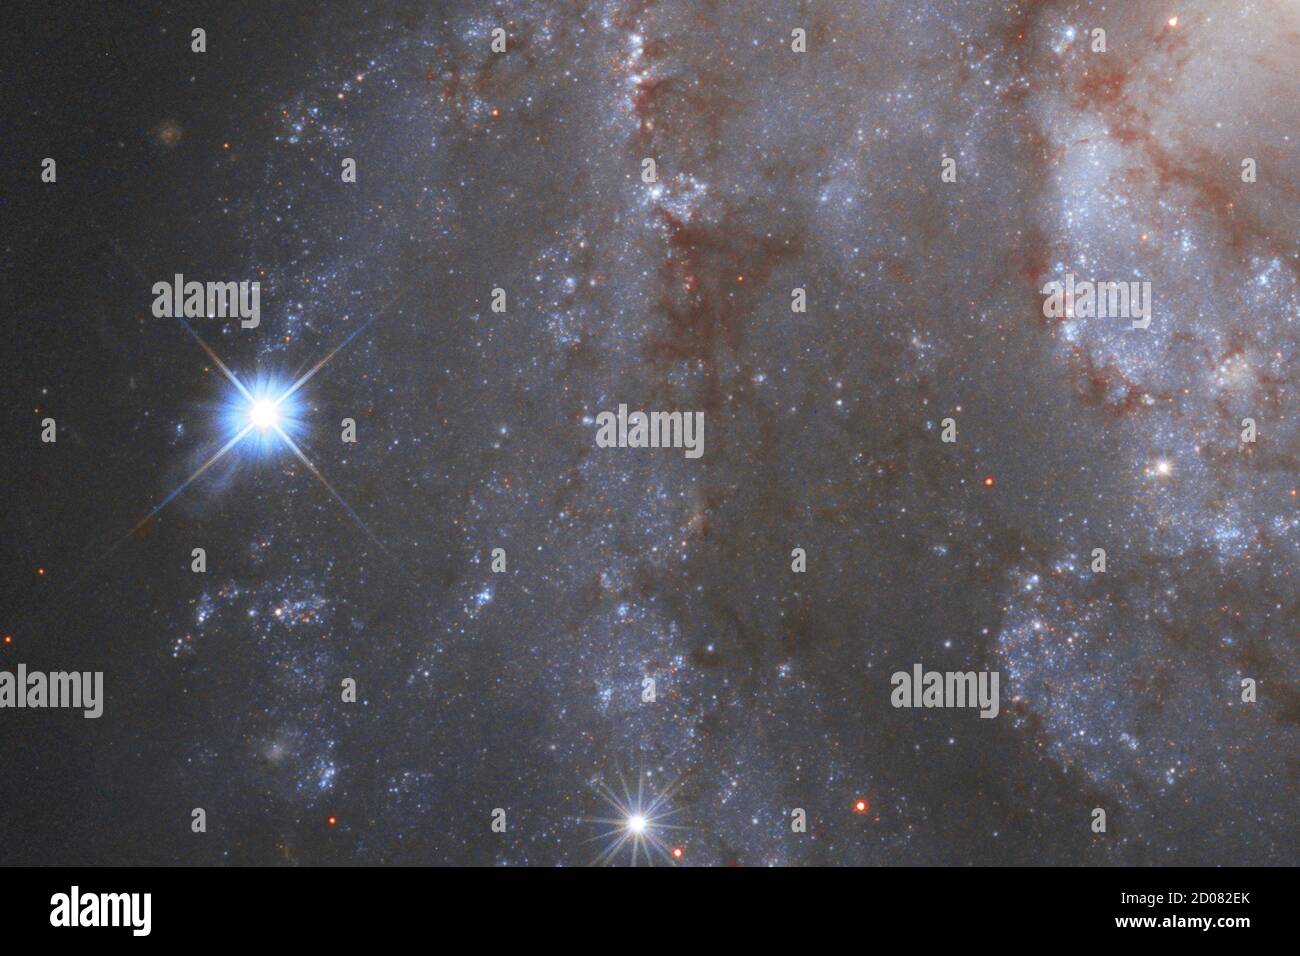 En la foto, en una imagen lanzada el 1 de octubre de 2020, es parte de la cautivadora galaxia NGC 2525. Ubicada a casi 70 millones de años luz de la Tierra, esta galaxia es parte de la constelación de Puppis en el hemisferio sur. Junto con las constelaciones Carina y vela, constituye una imagen del Argo de la antigua mitología griega. A la izquierda, una supernova brillante es visible en la imagen. La supernova es conocida formalmente como SN2018gv y fue detectada por primera vez a mediados de enero de 2018. El Telescopio Espacial Hubble de la NASA/esa capturó la supernova en NGC 2525 como parte de una de sus principales investigaciones Foto de stock